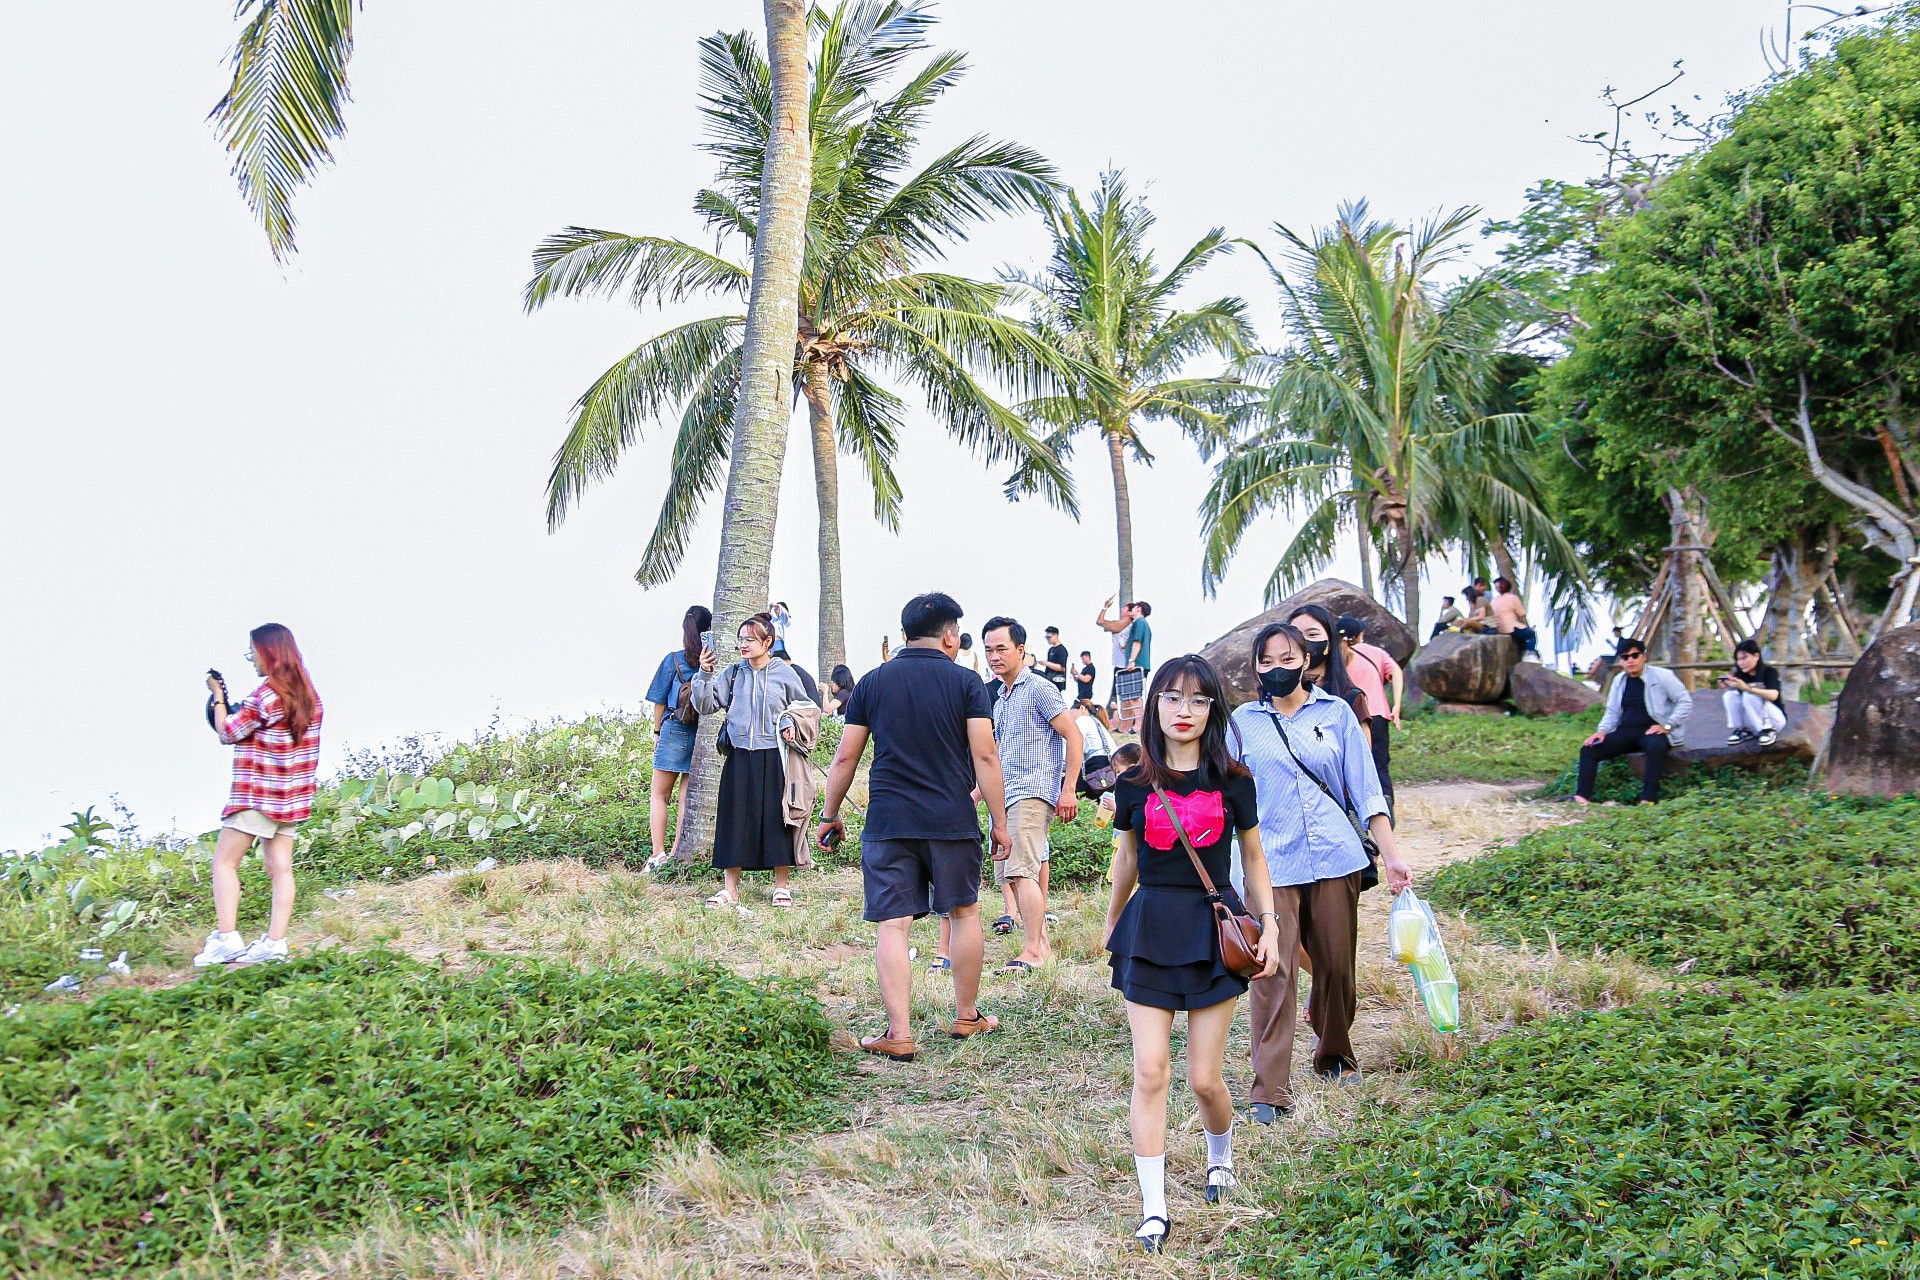 Bán đảo Sơn Trà - địa điểm 'chữa lành' cực hot với giới trẻ